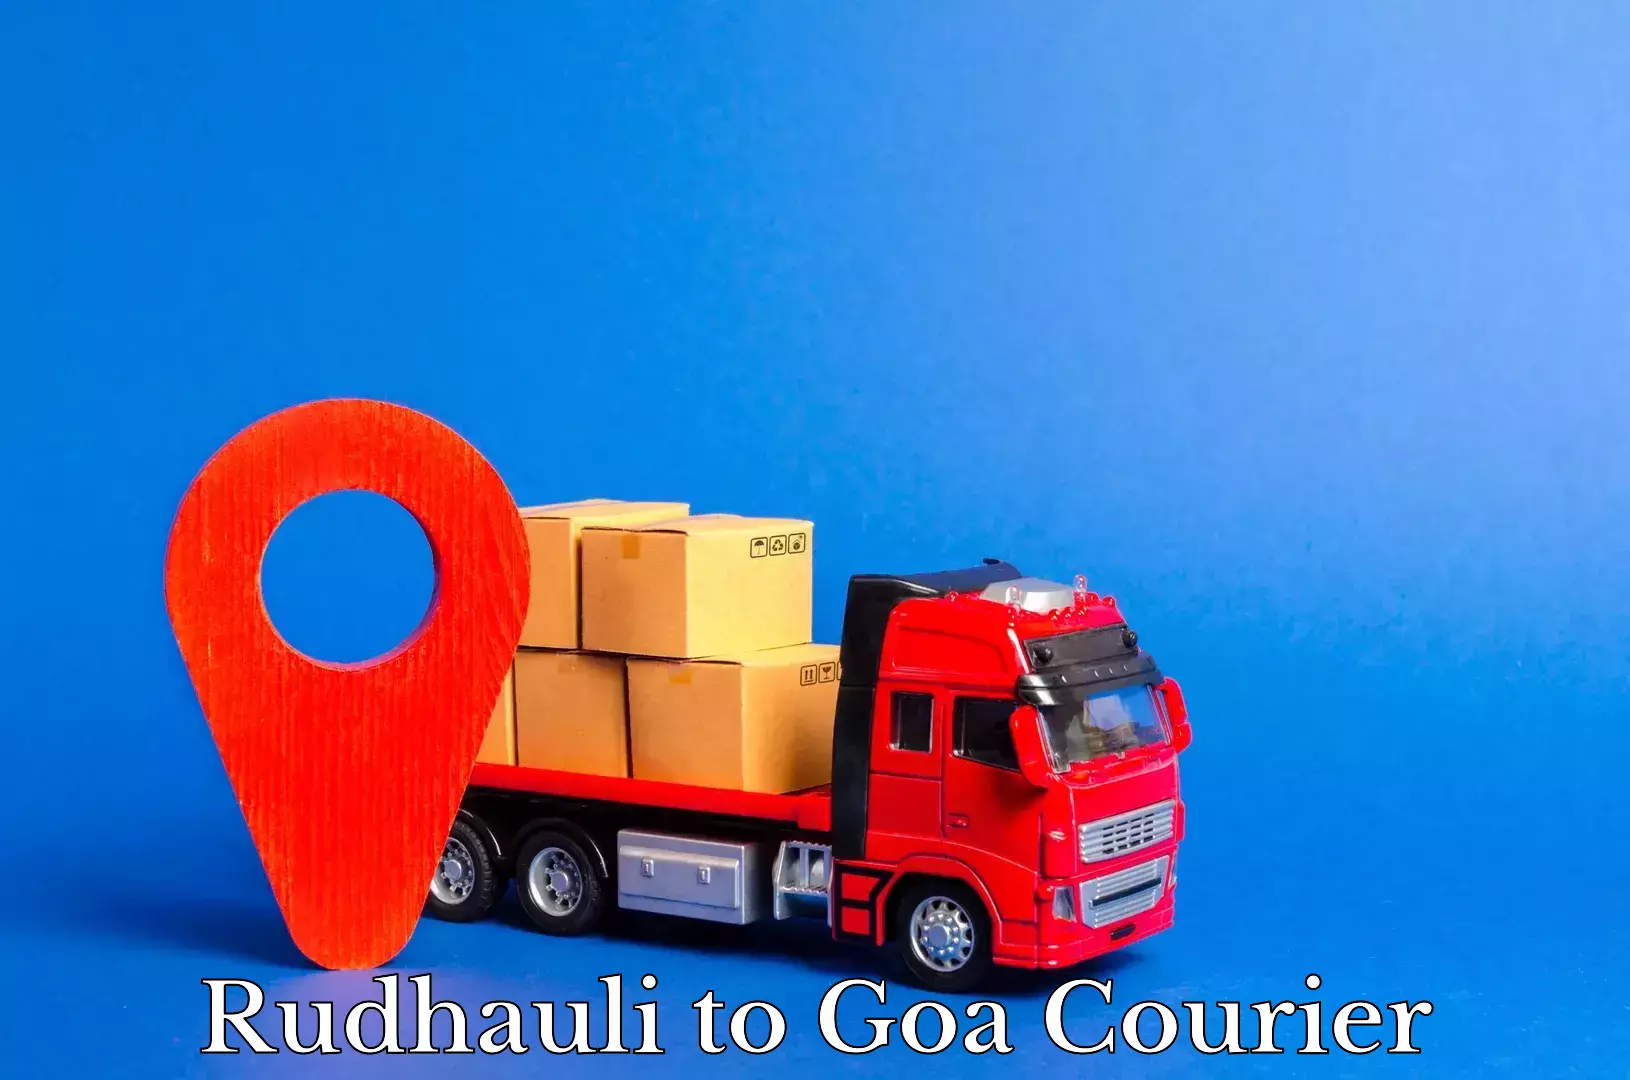 Courier service comparison Rudhauli to Goa